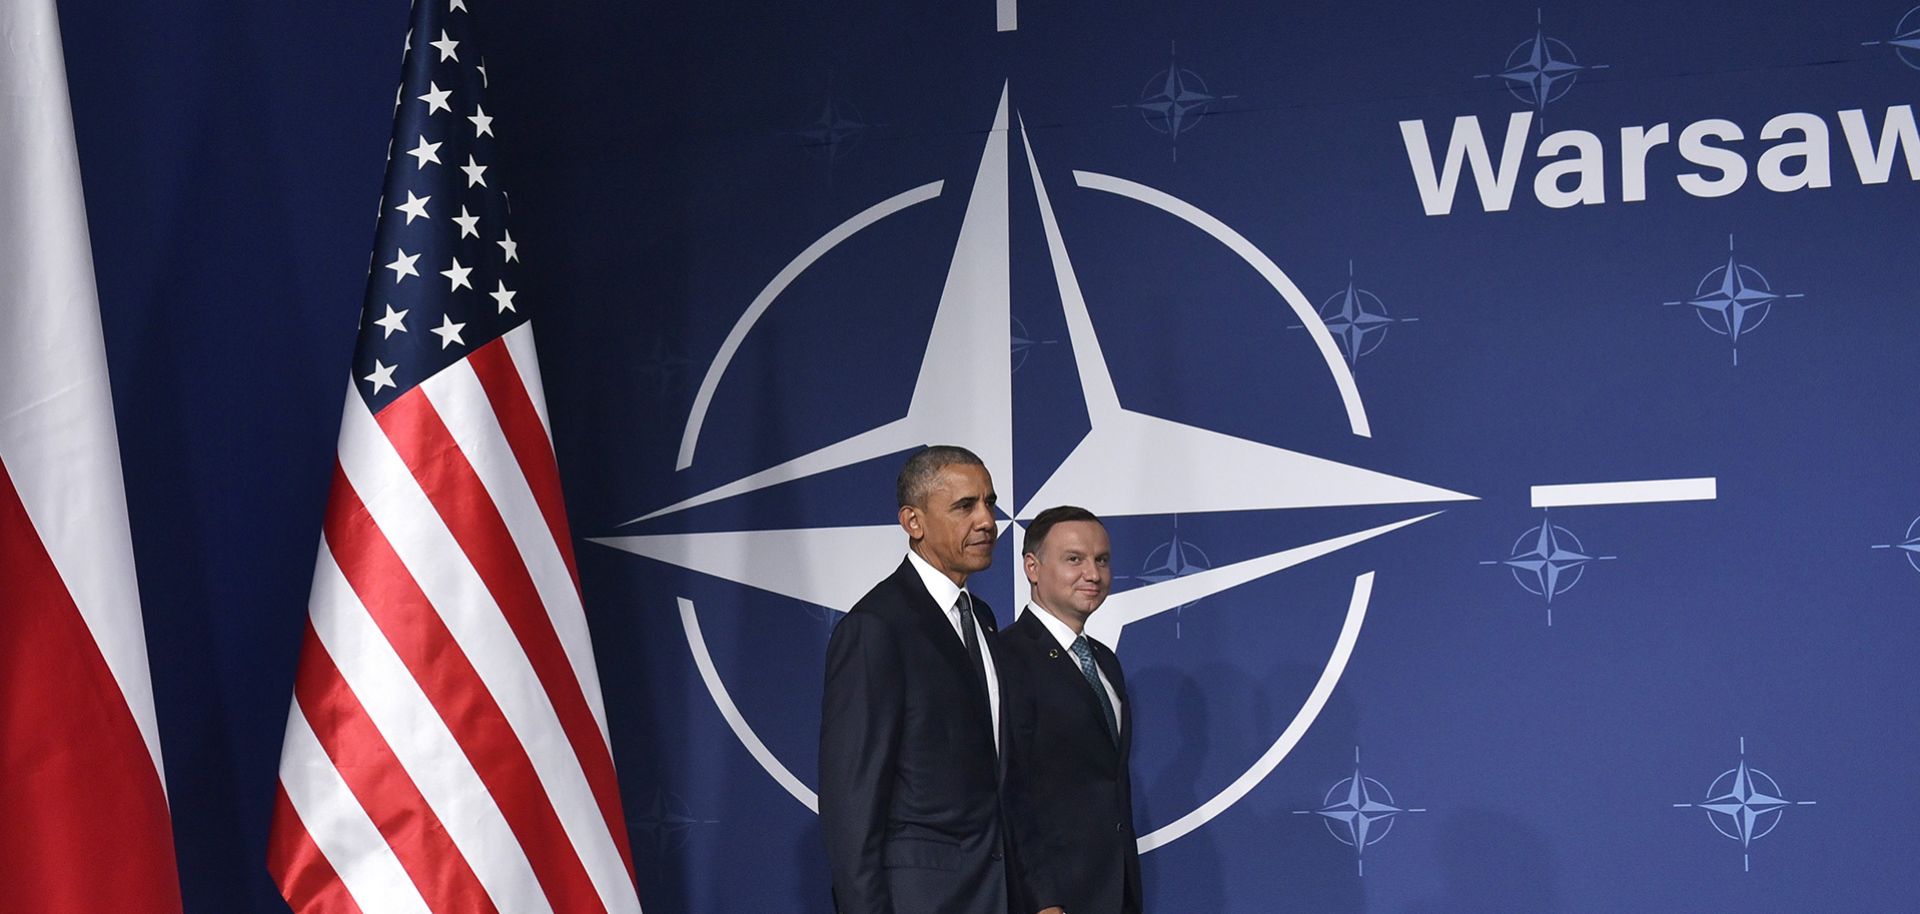 NATO Warsaw Obama Russia